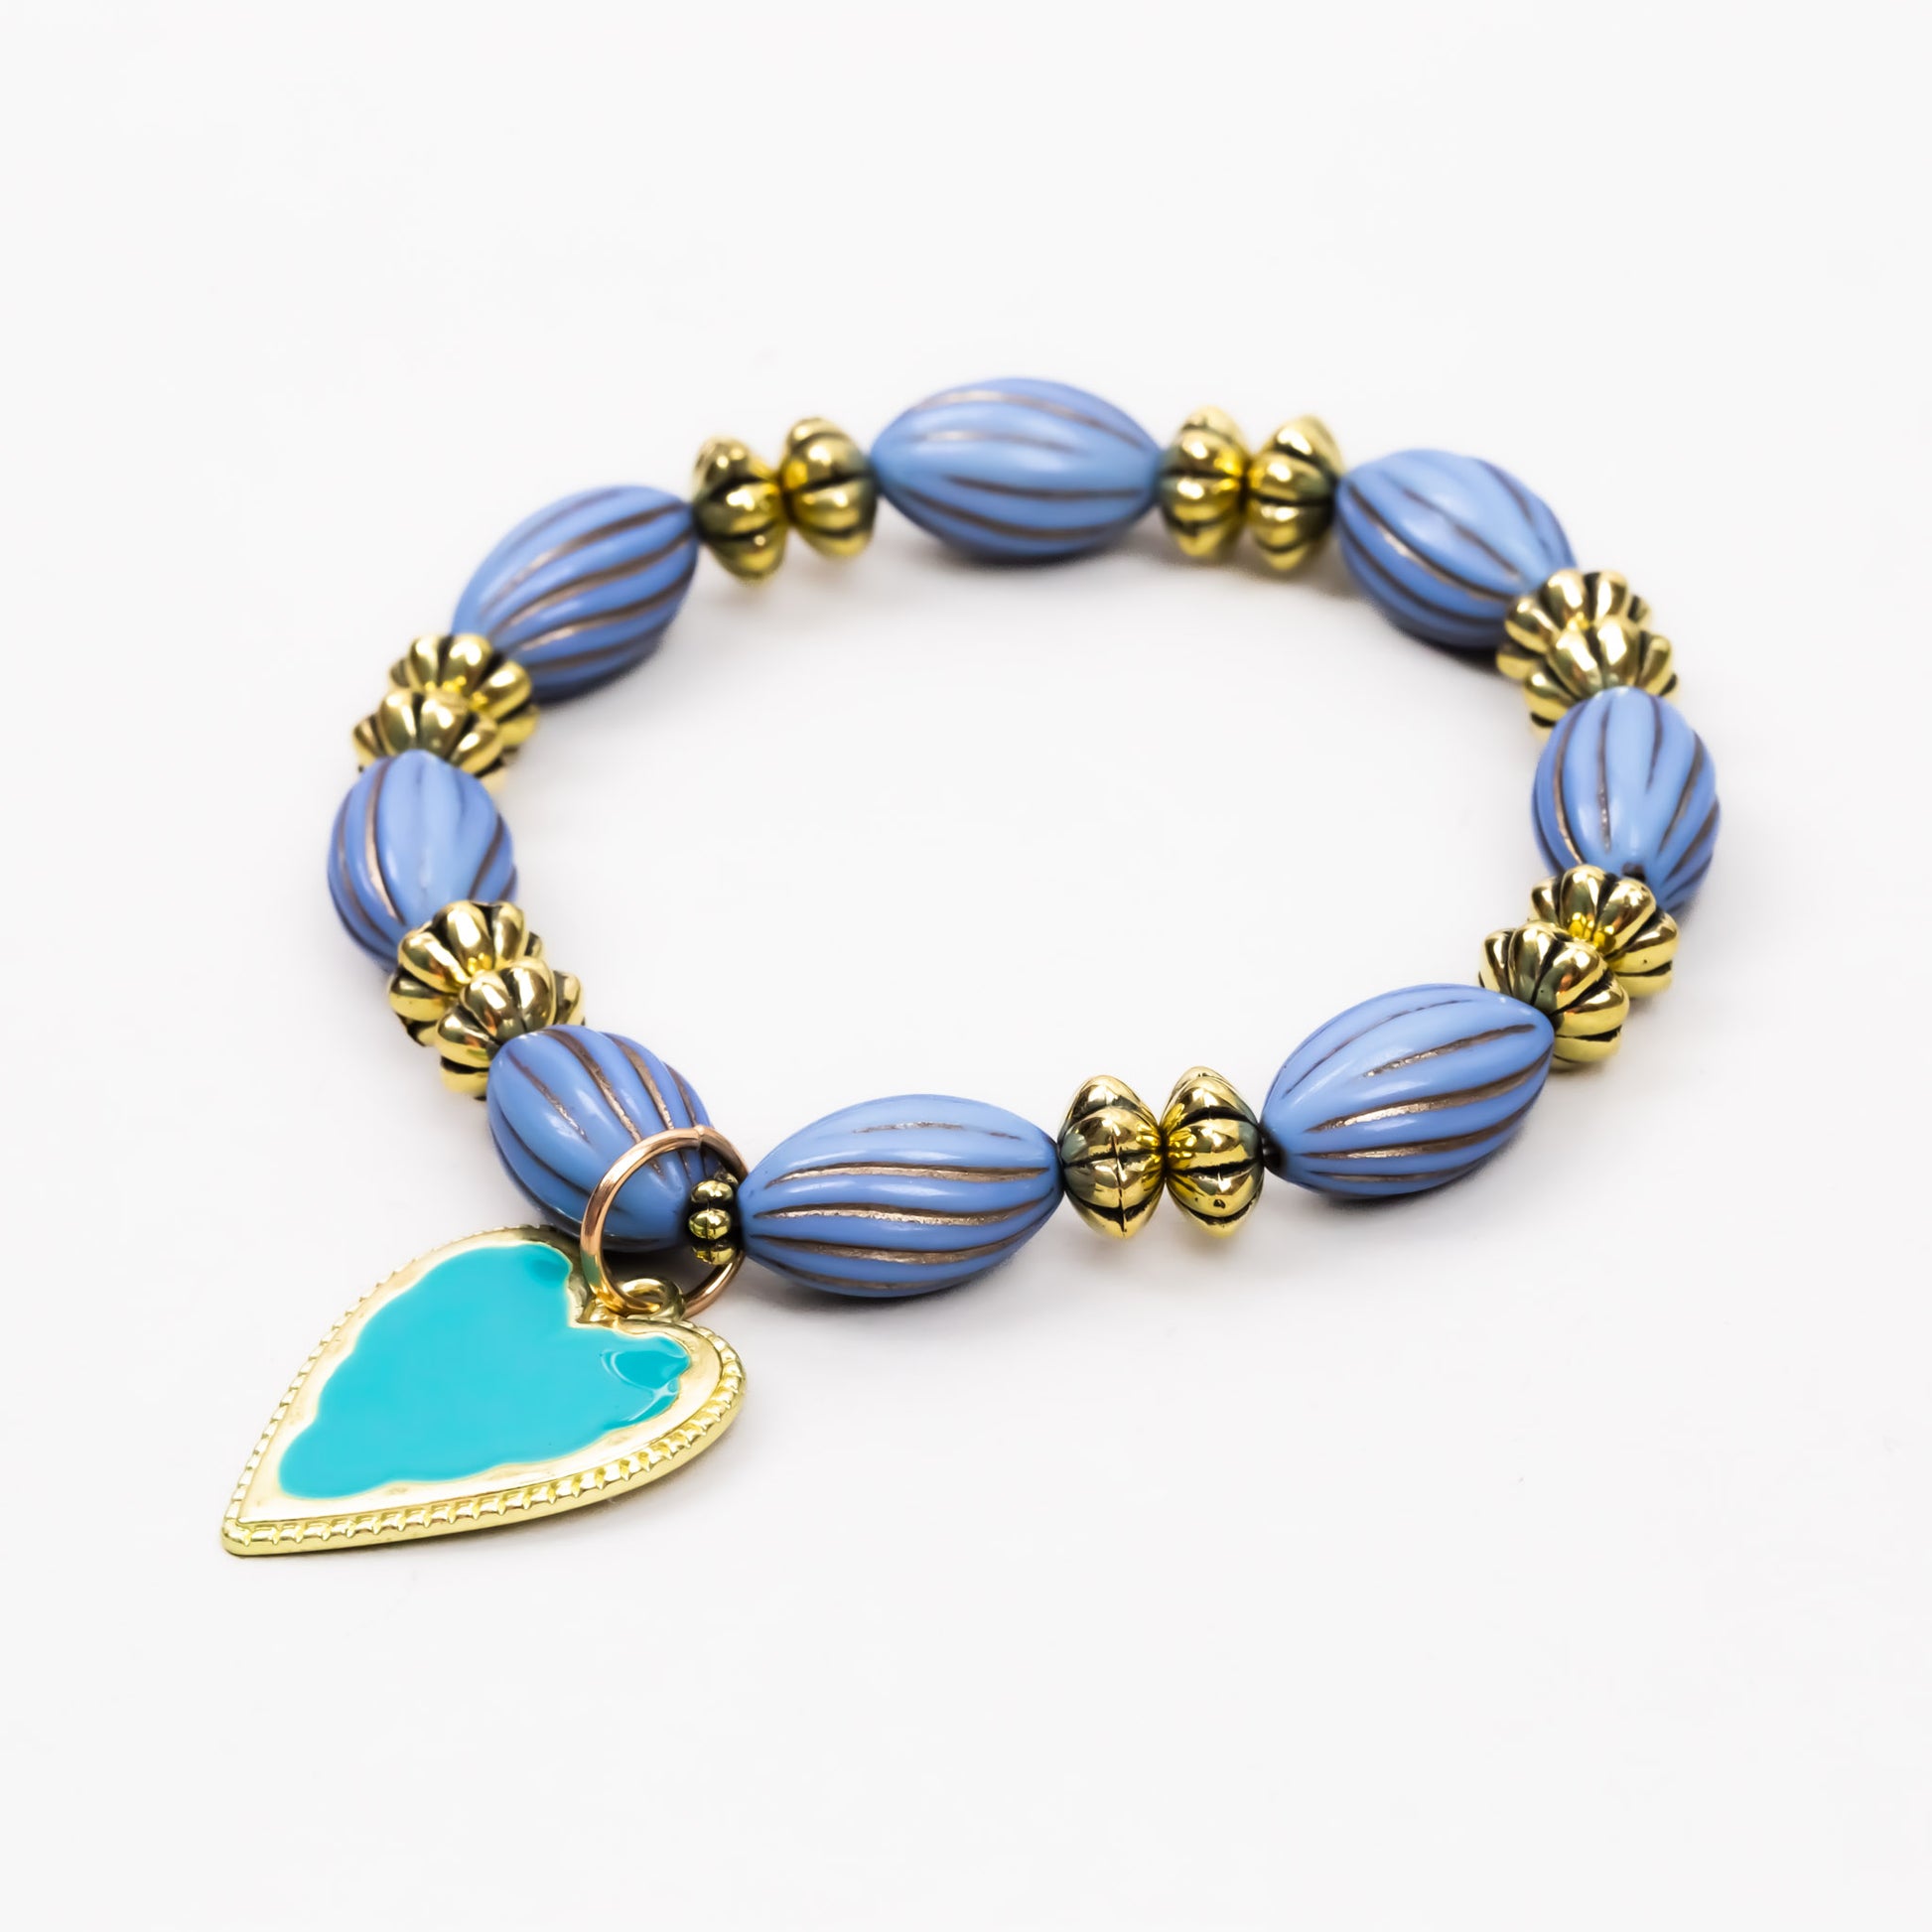 Brățară elastică opulence cu charm în formă de inimă - Albastru, Auriu